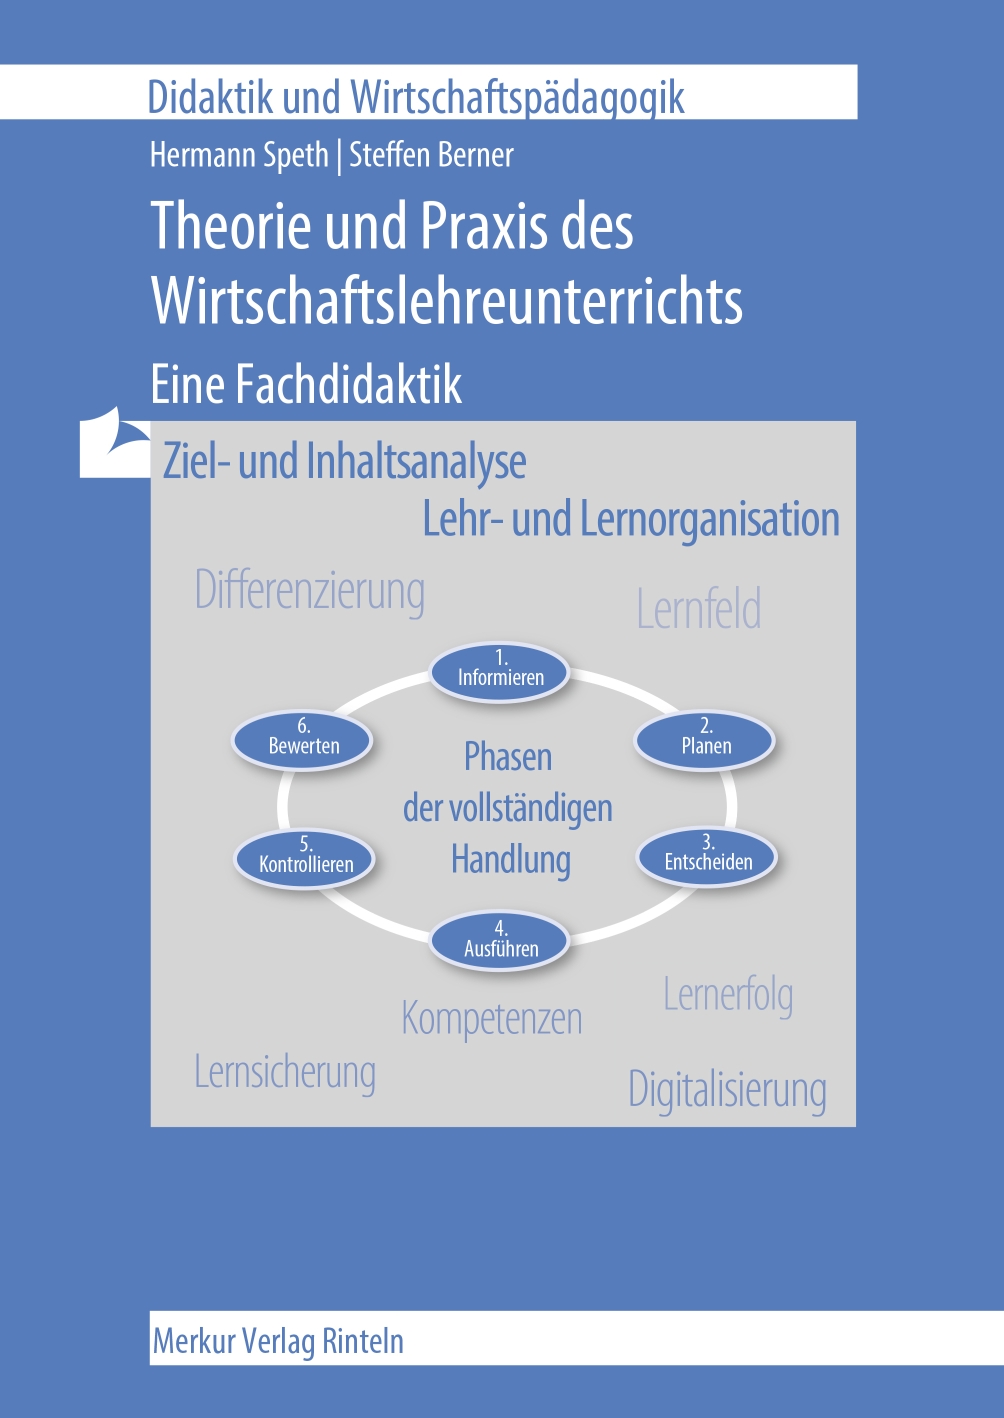 Theorie und Praxis des Wirtschaftslehreunterrichts - Eine Fachdidaktik - Ziel- und Inhaltsanalyse - Lehr- und Lernorganisation